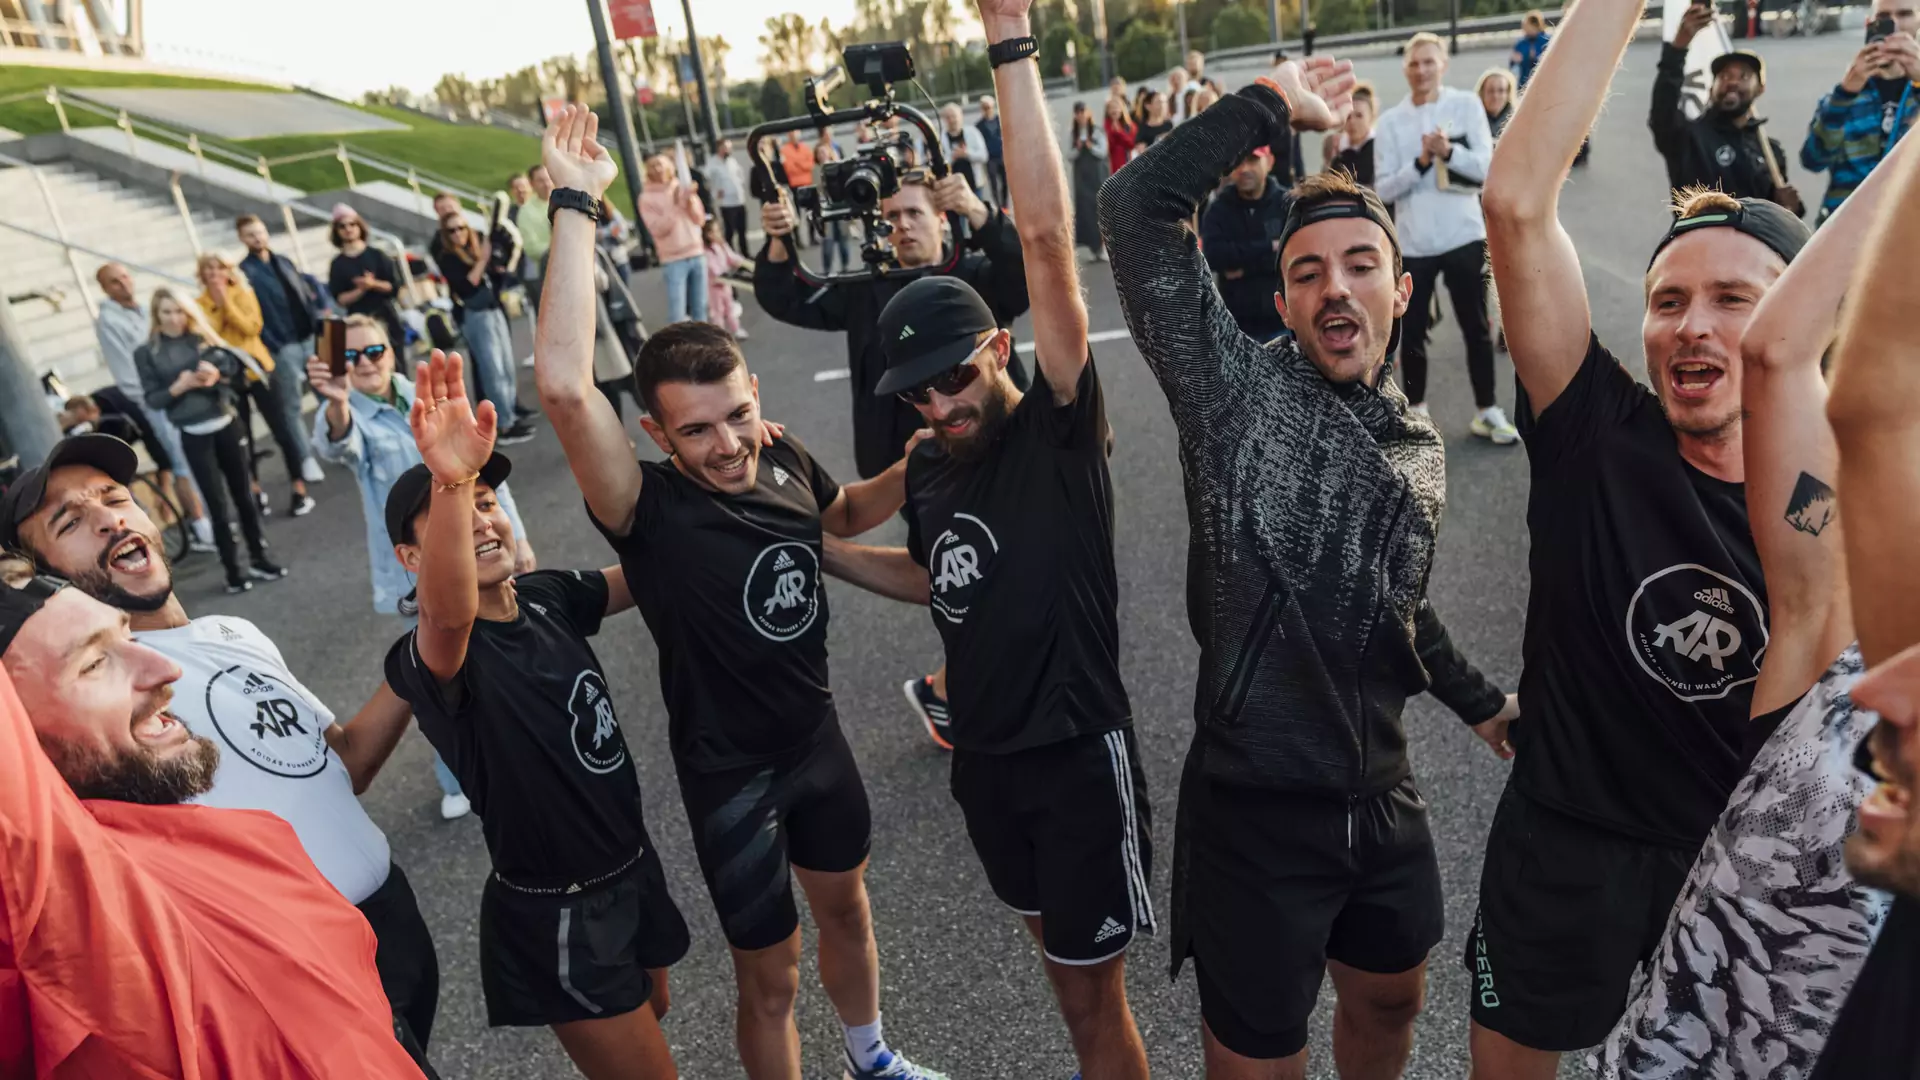 Team adidas Runners Europe zostawia daleko w tyle resztę świata, zwyciężając w The Speed Project